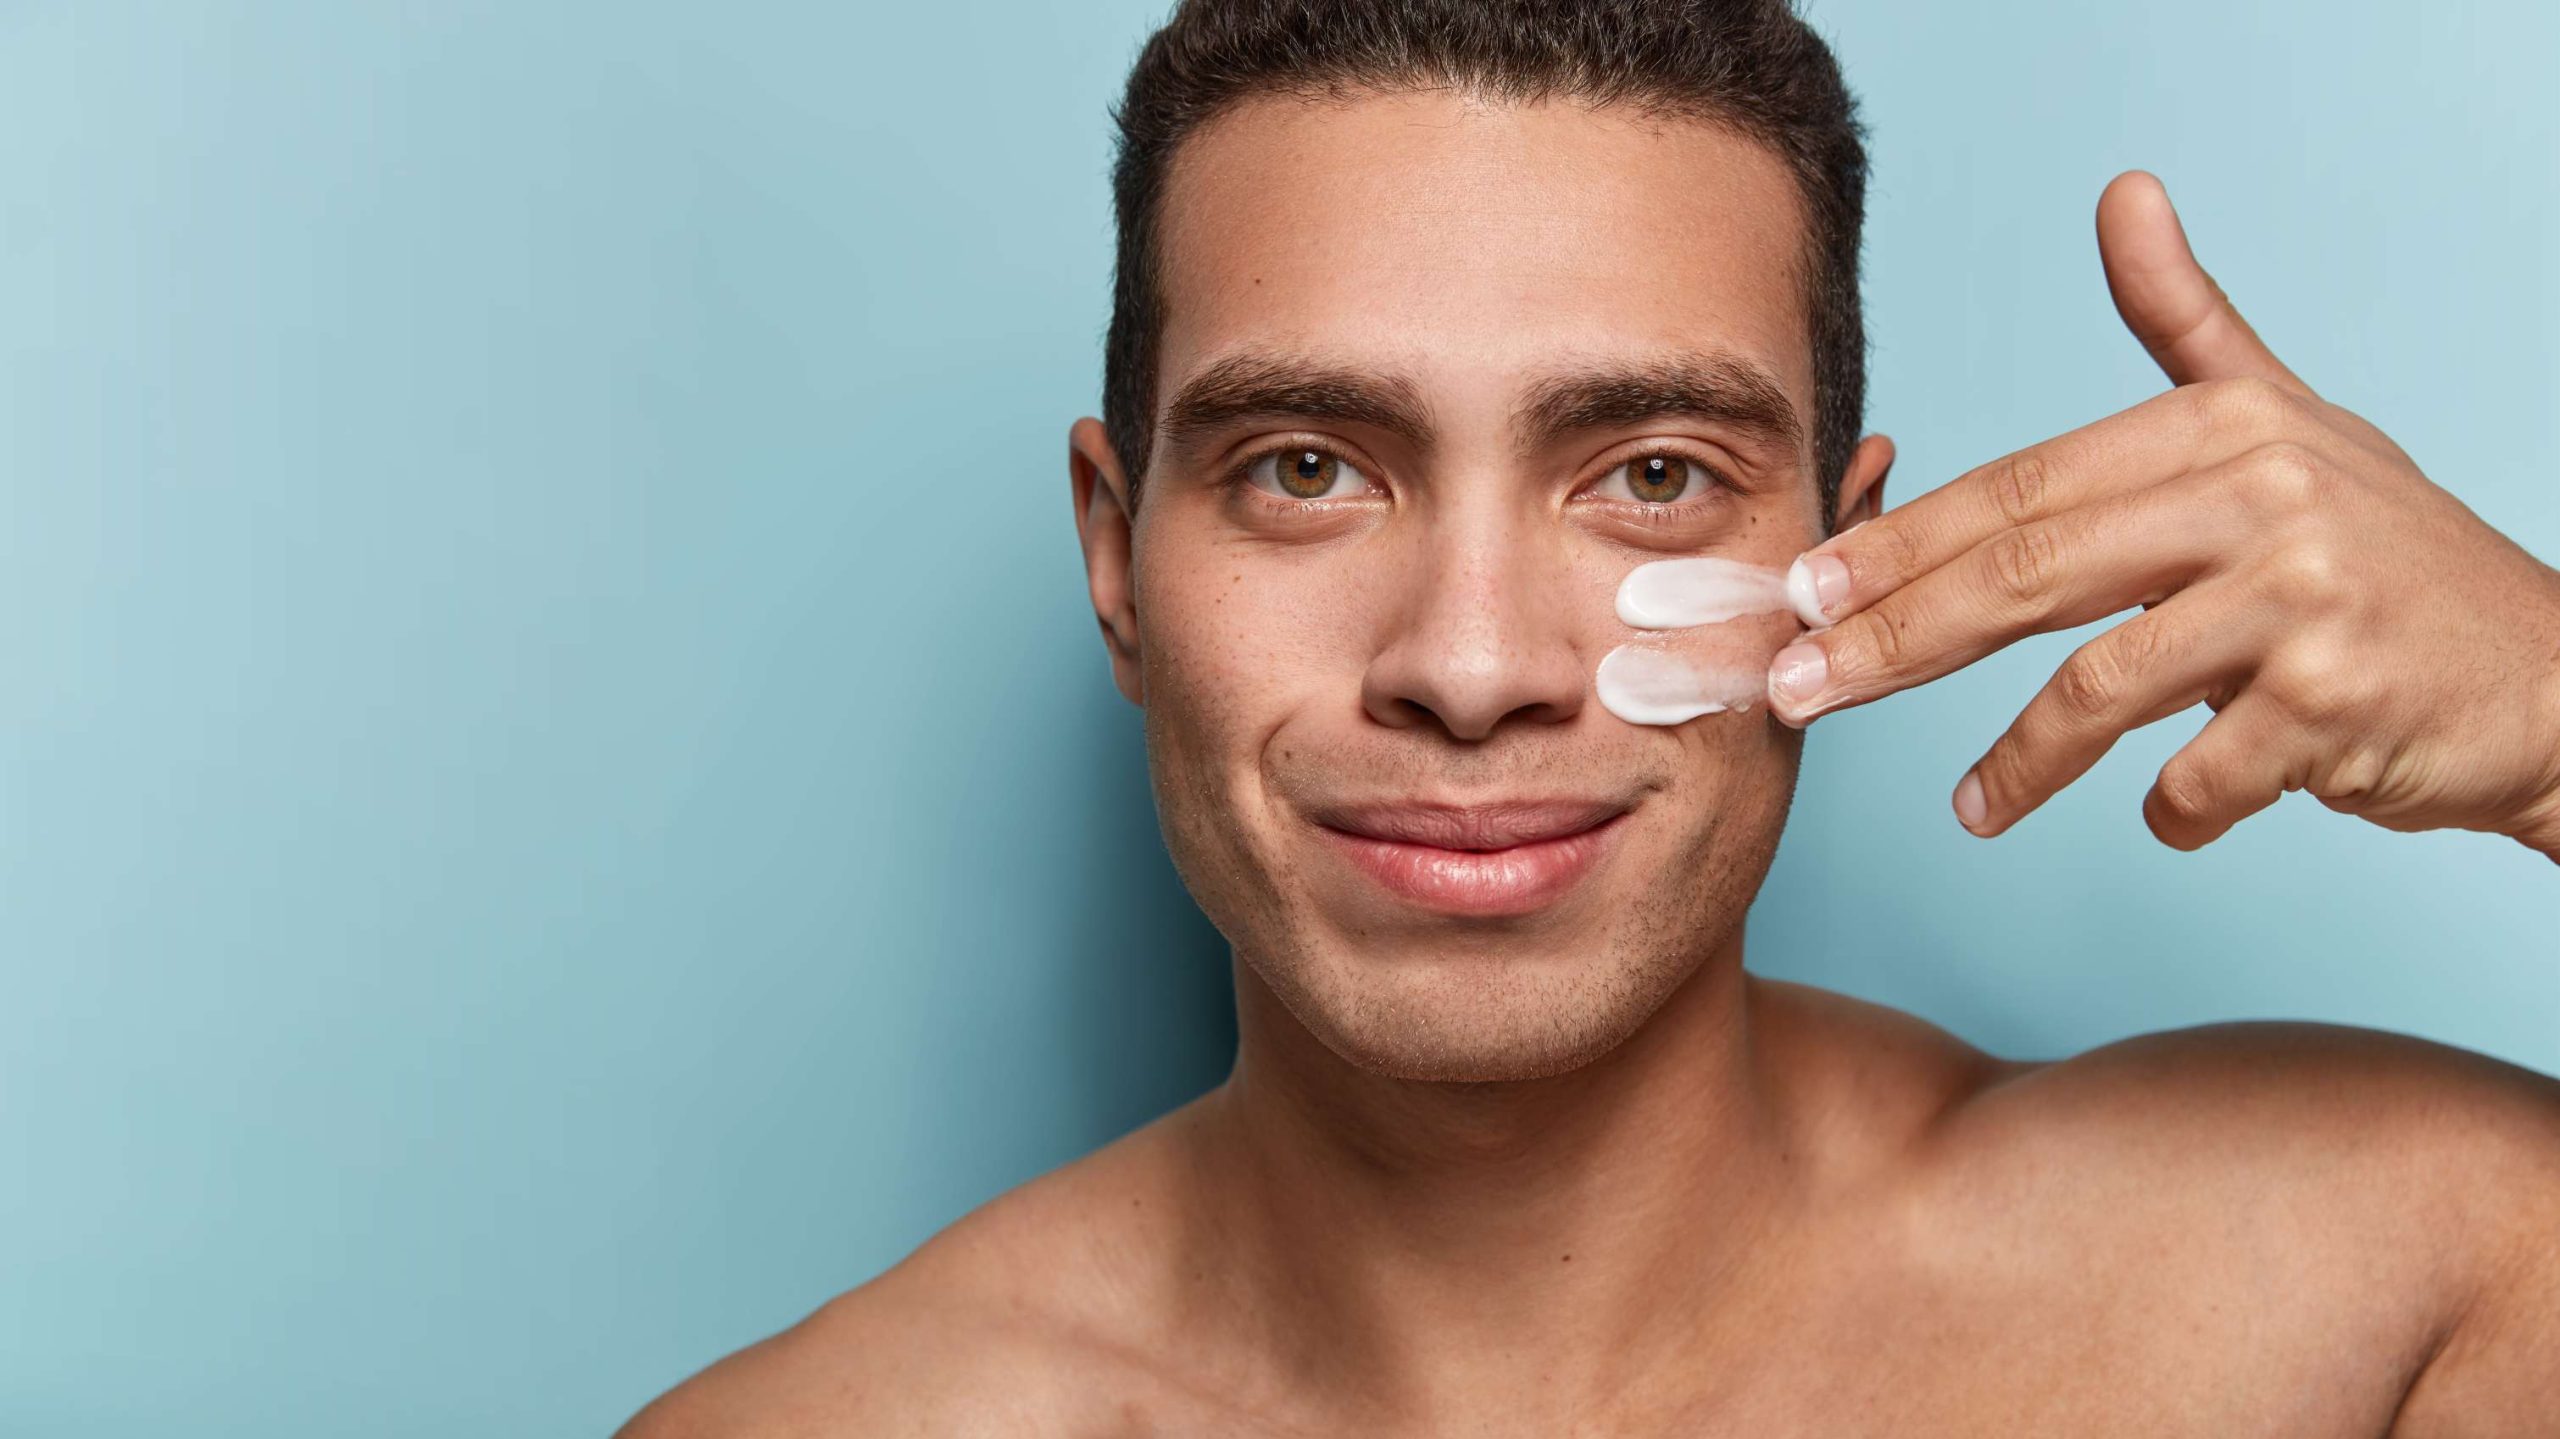 Skincare Routine for Men